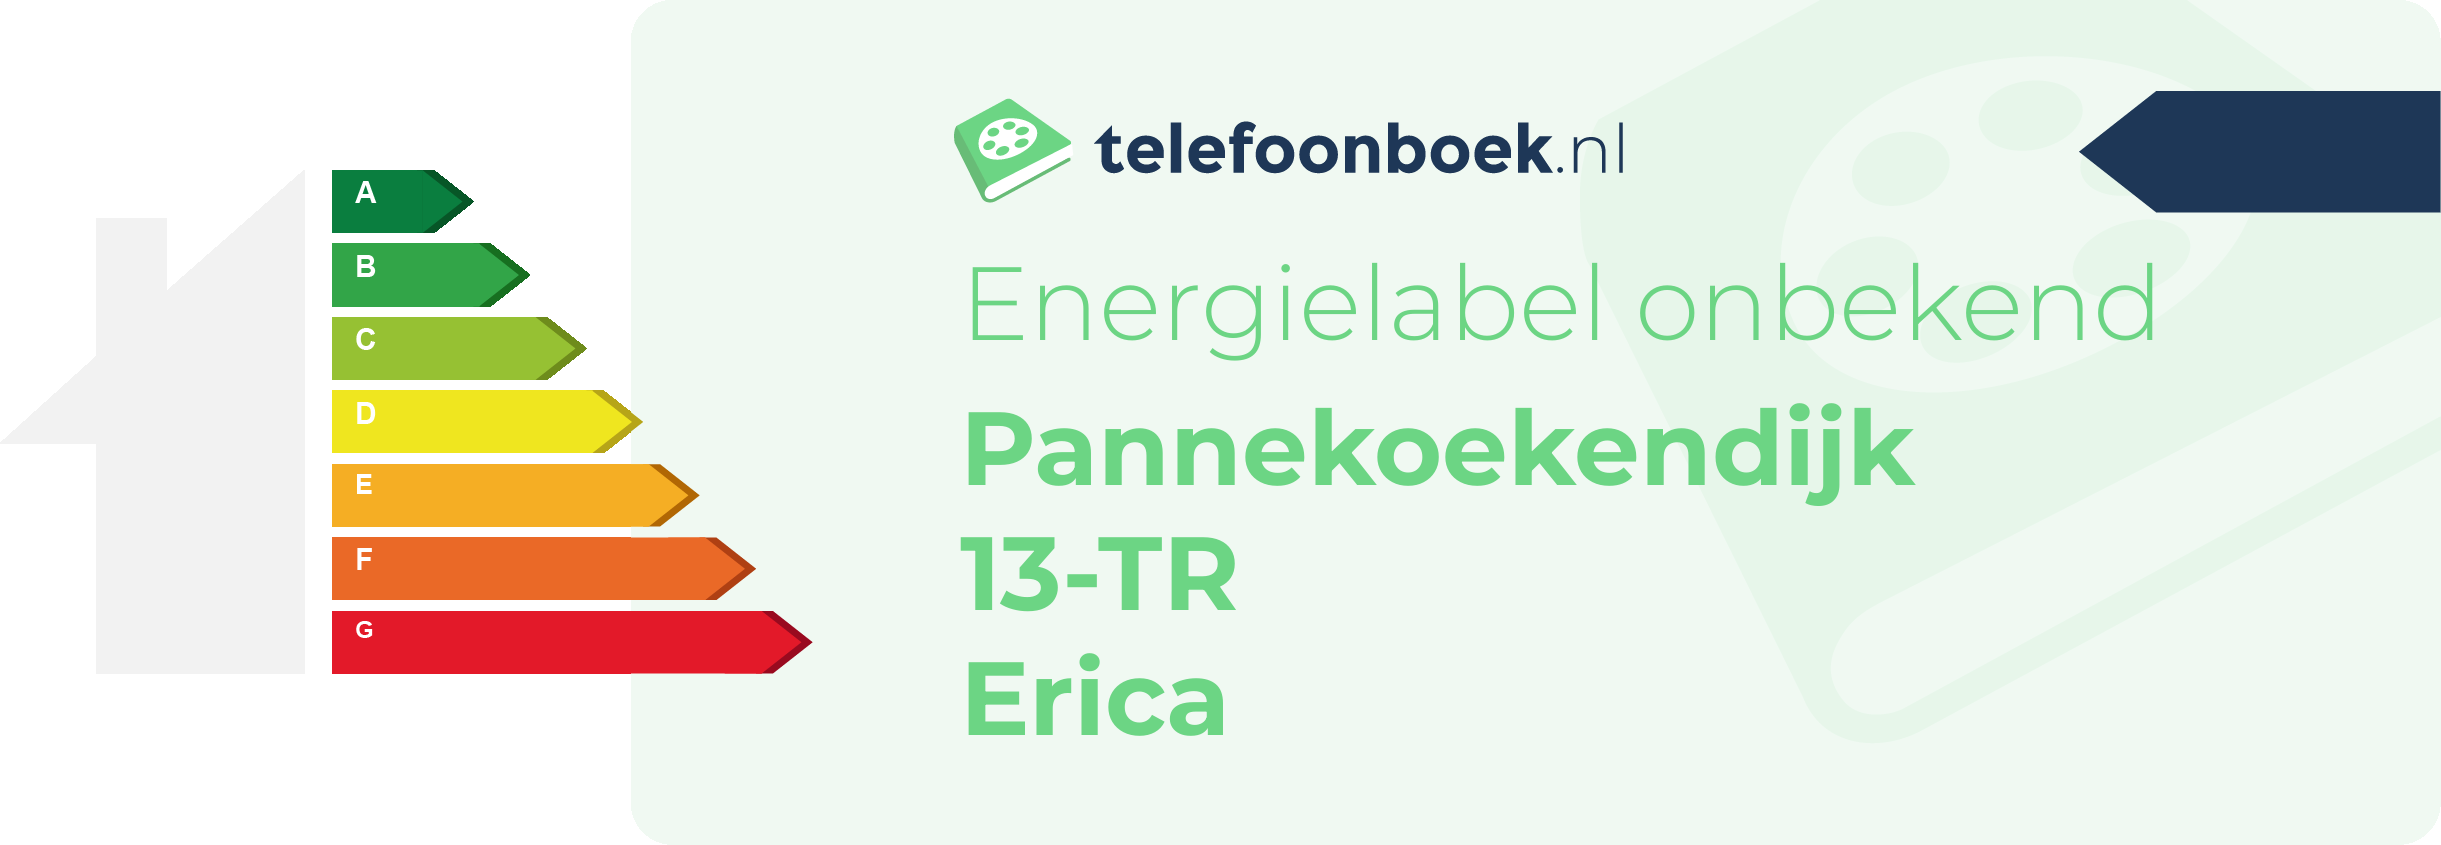 Energielabel Pannekoekendijk 13-TR Erica